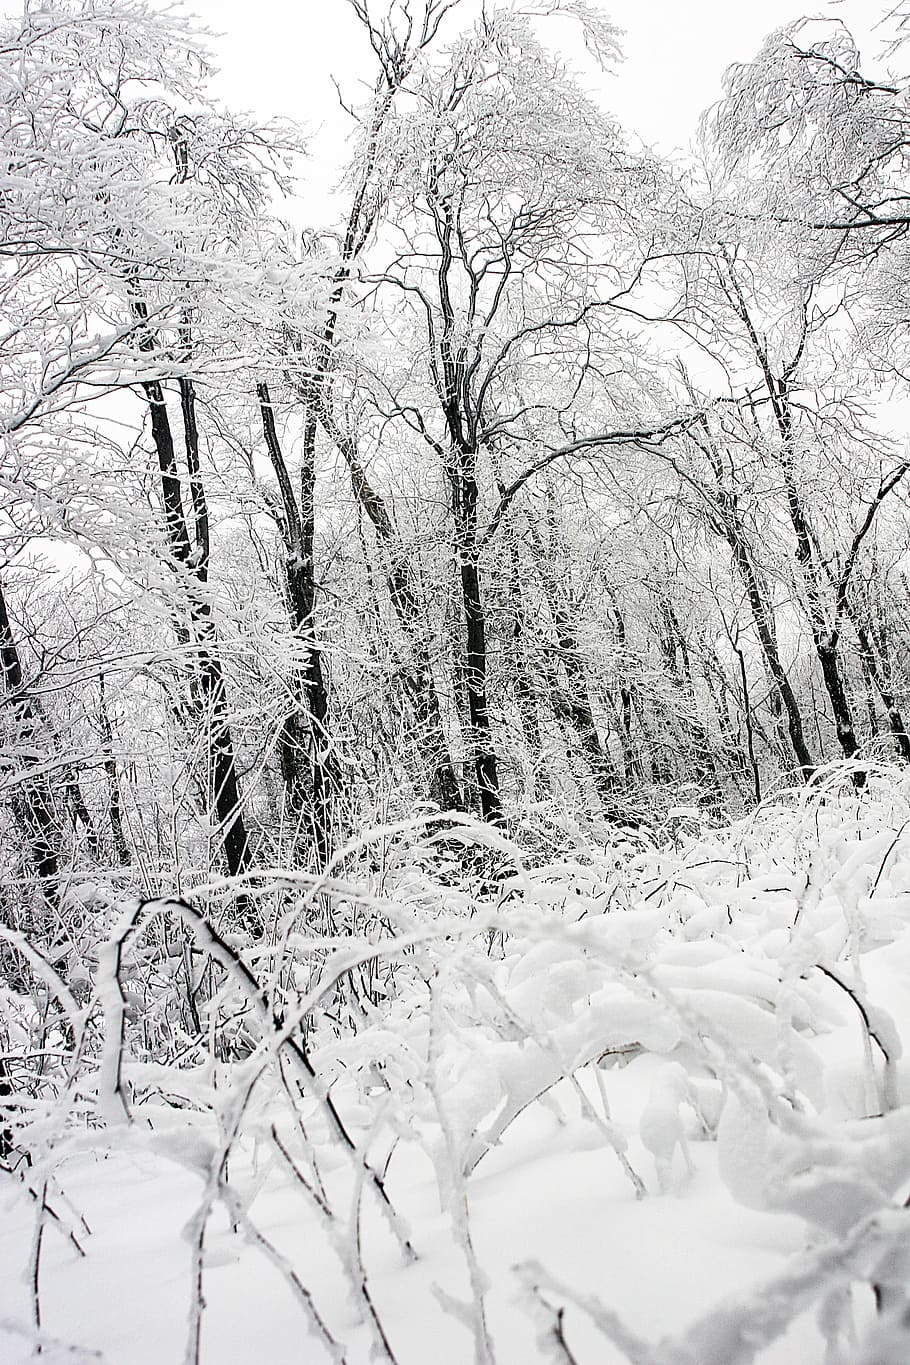 musim dingin, salju, es, beku, ze, dingin, pohon, alam, hutan, kayu